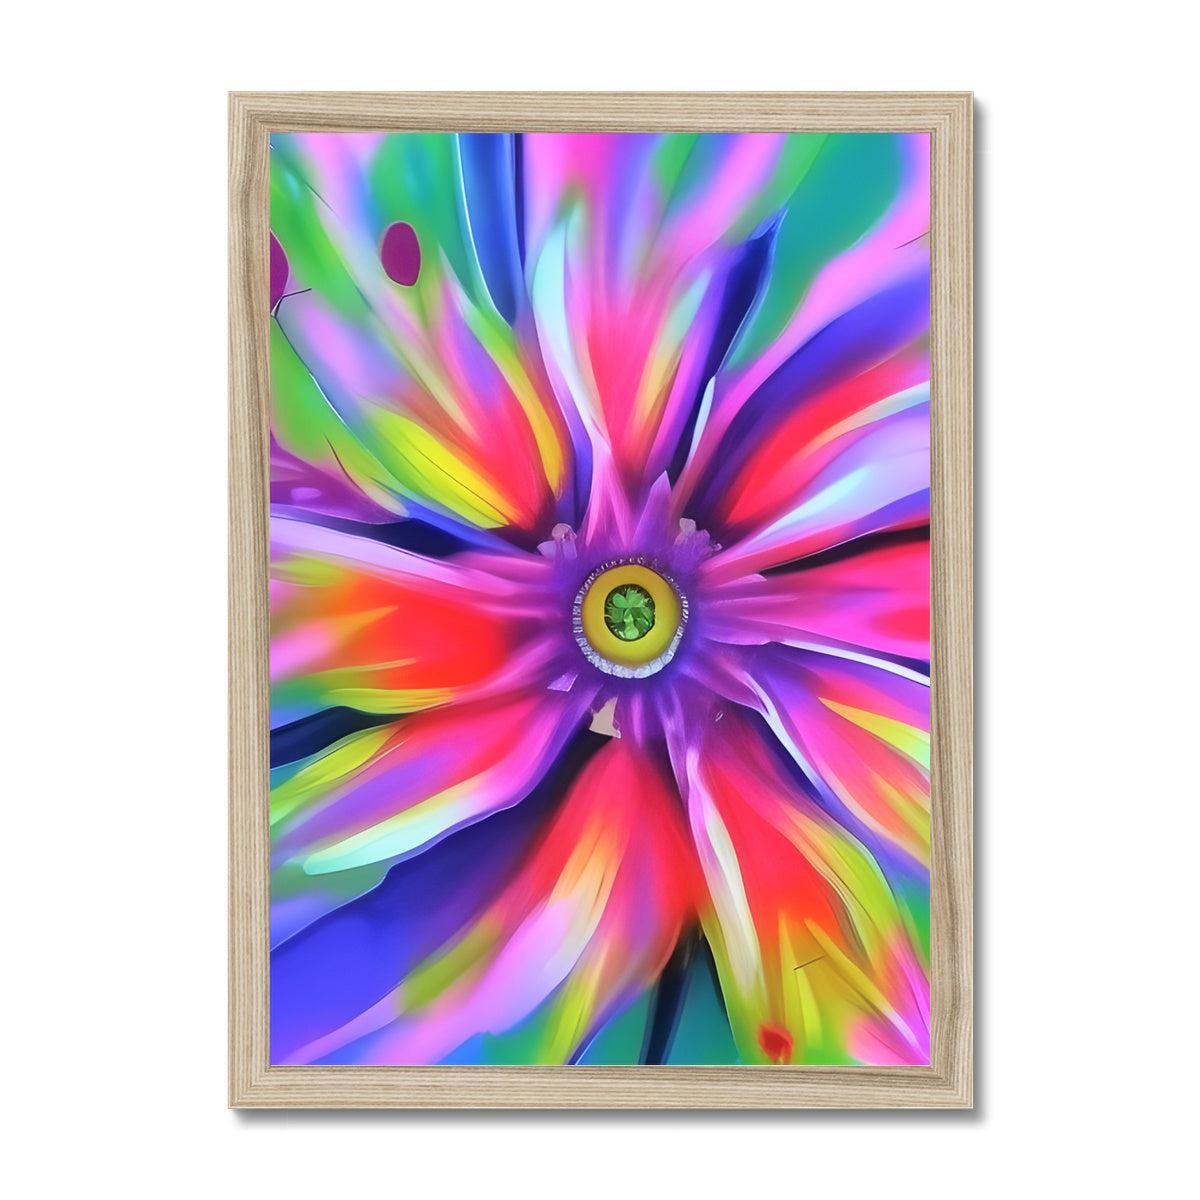 Surreal Flower Framed Print